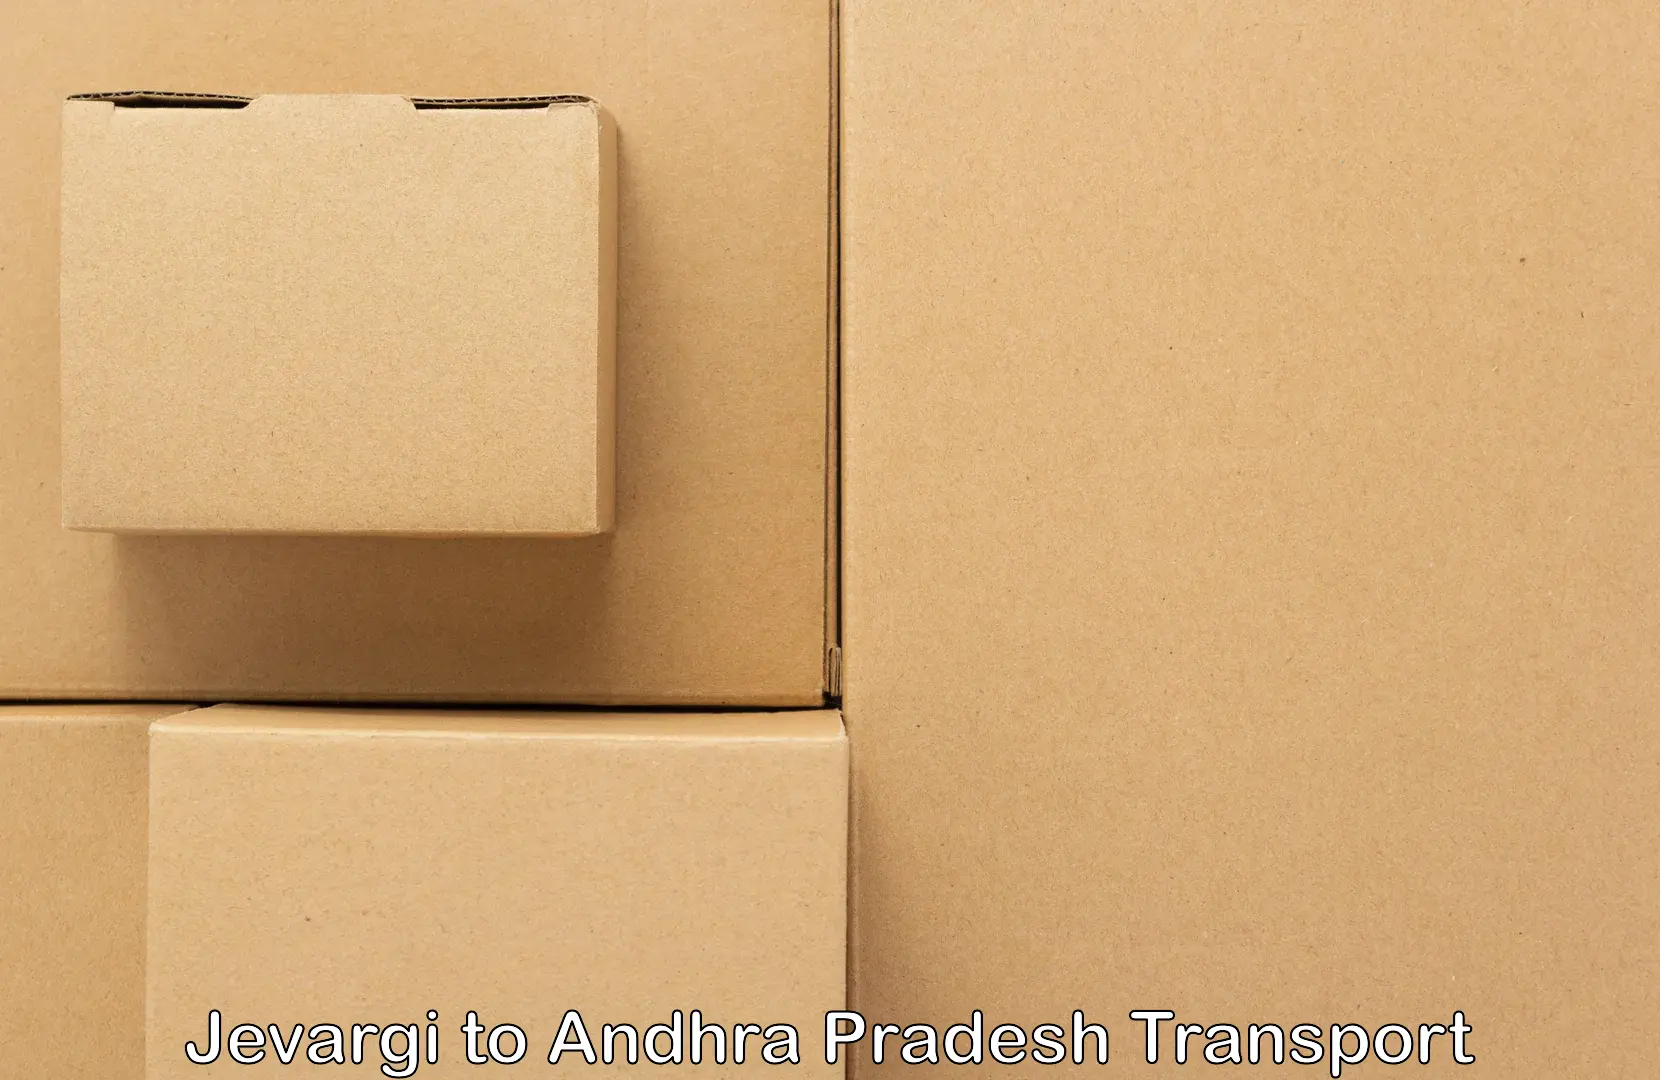 Truck transport companies in India Jevargi to Martur